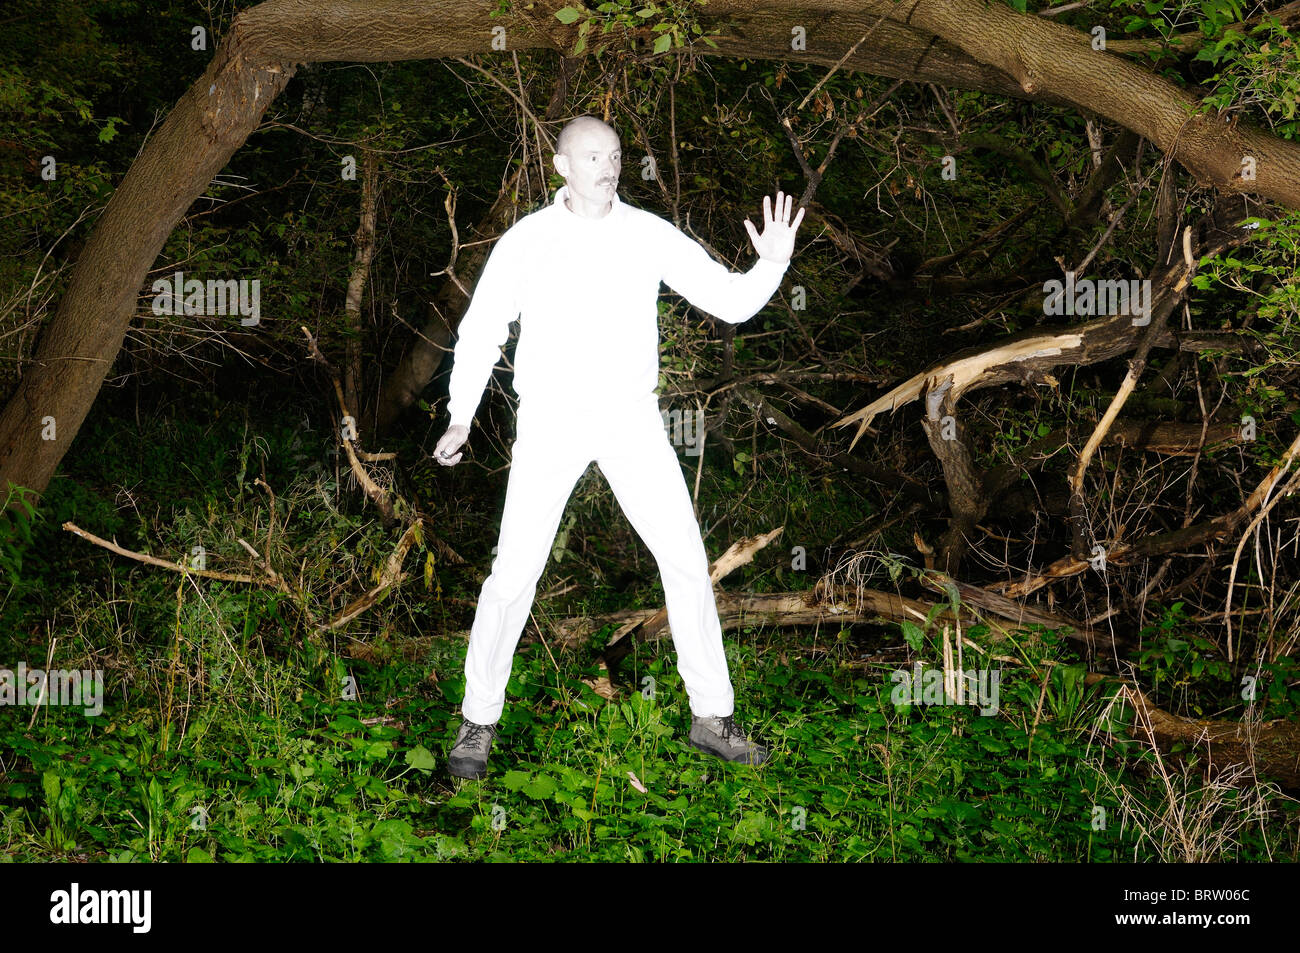 Floating alien uomo in bianco luminoso con vestiti catturati in una fitta foresta infestata da erbacce Foto Stock